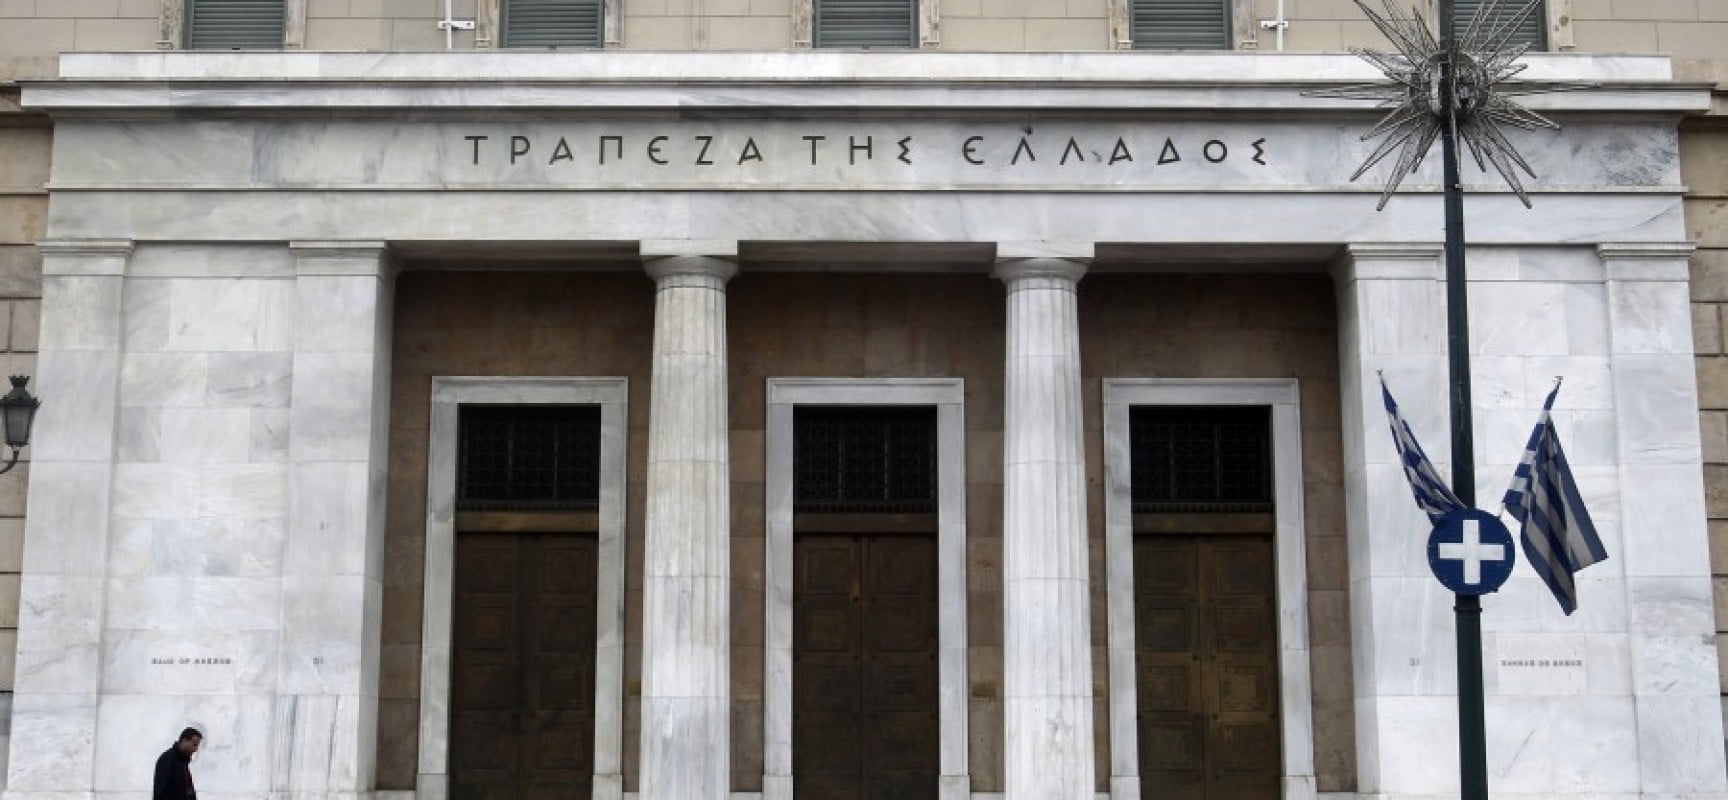 Τράπεζα της Ελλάδος (1Γ2019): Οδηγίες ΑΣΕΠ για υποψηφίους με κινητικά προβλήματα